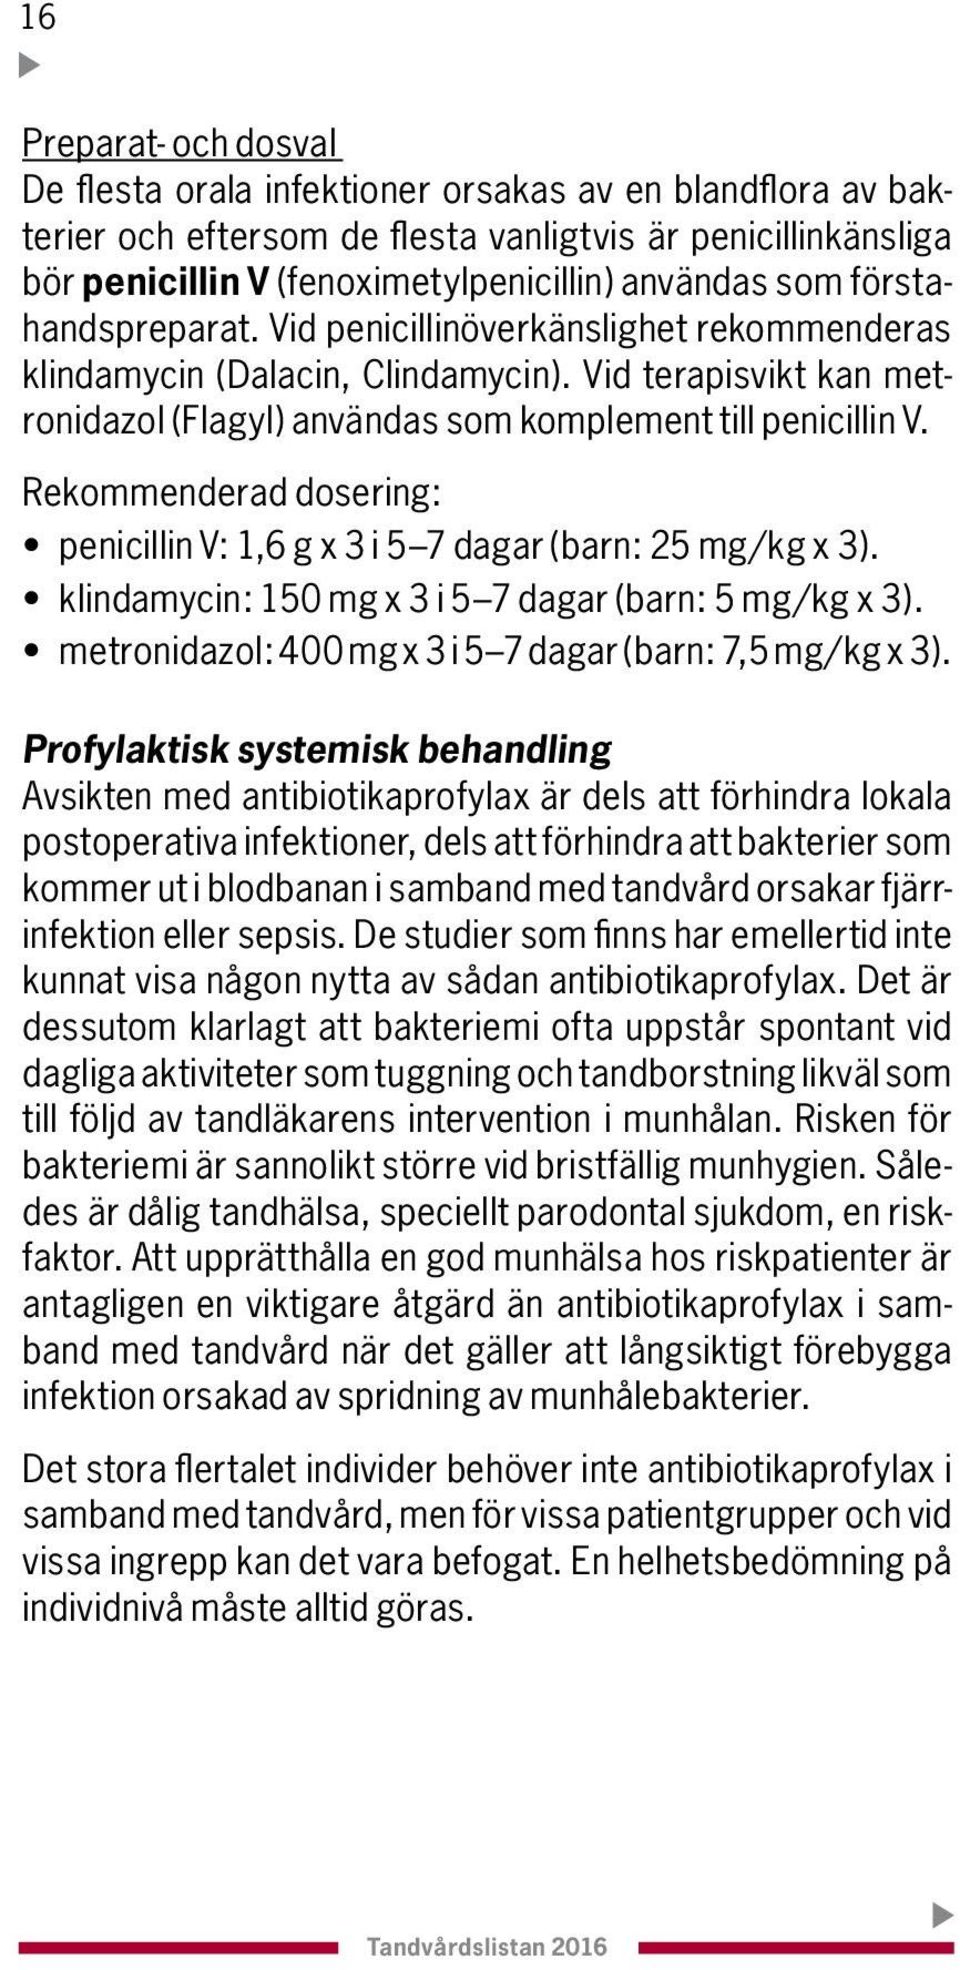 Rekommenderad dosering: penicillin V: 1,6 g x 3 i 5 7 dagar (barn: 25 mg/kg x 3). klindamycin: 150 mg x 3 i 5 7 dagar (barn: 5 mg/kg x 3). metronidazol: 400 mg x 3 i 5 7 dagar (barn: 7,5 mg/kg x 3).